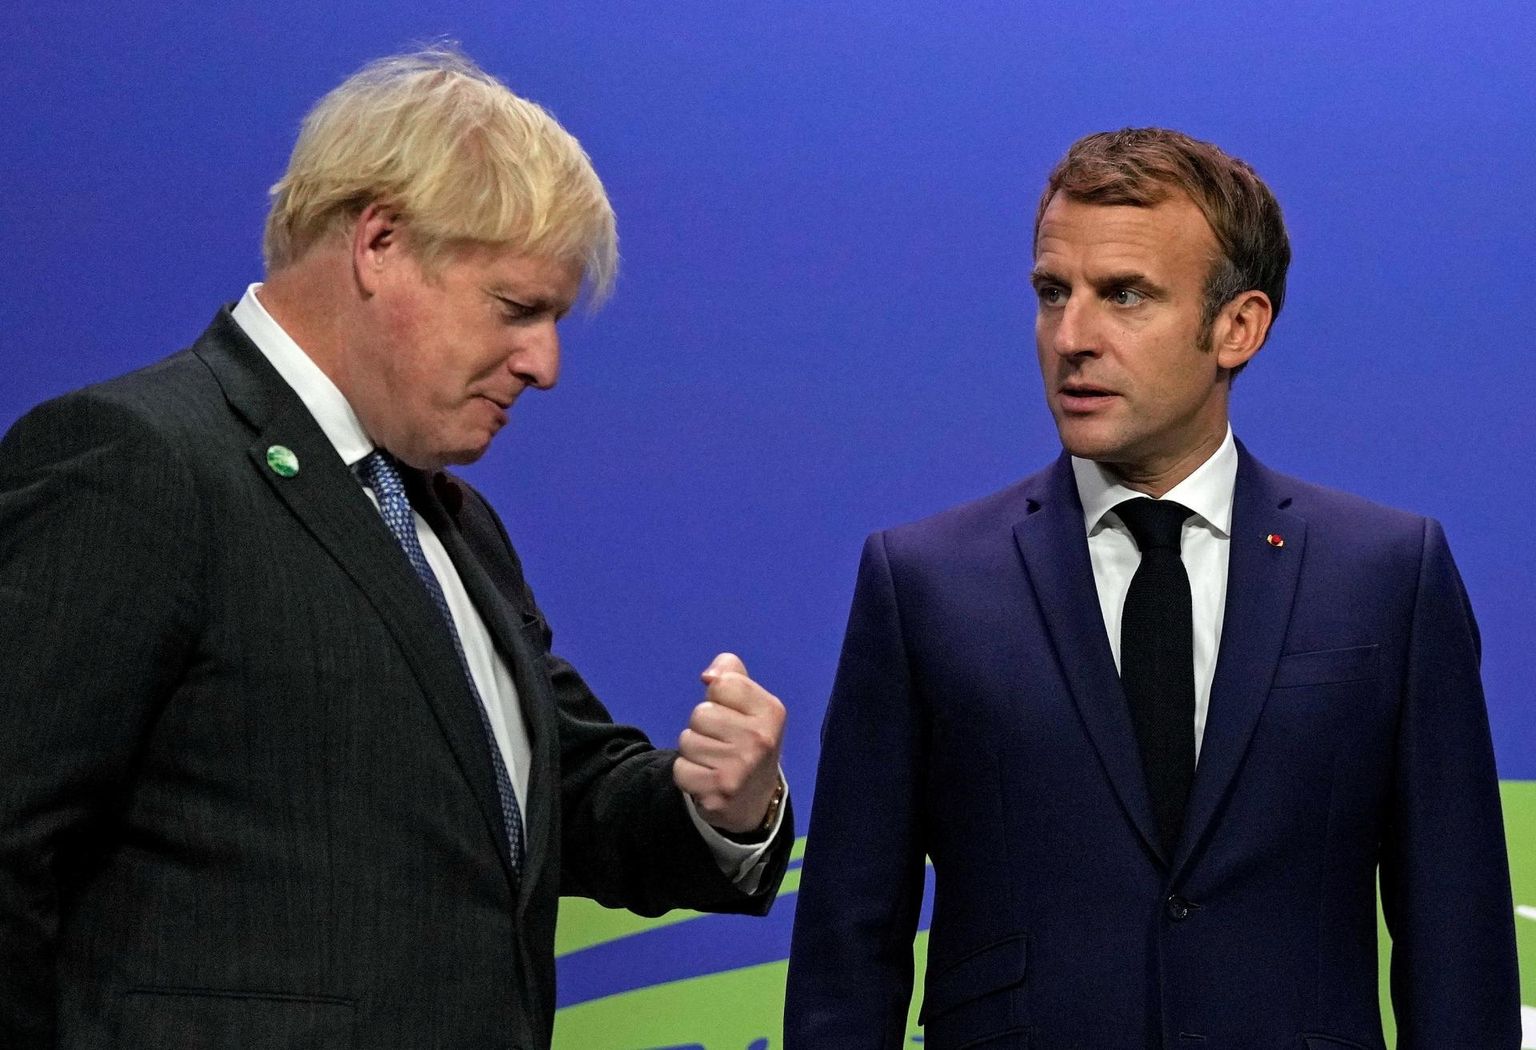 Euroopa suurriikide seas vastanduvad Prantsusmaa ja Ühendkuningriigi lähenemised. Kui esimene rakendab kõiksugu abinõusid, siis teise meelest pole täiendavaid hüvitisi vaja. Ühendkuningriigi peaminister Boris Johnson ja Prantsusmaa president Emmanuel Macron.